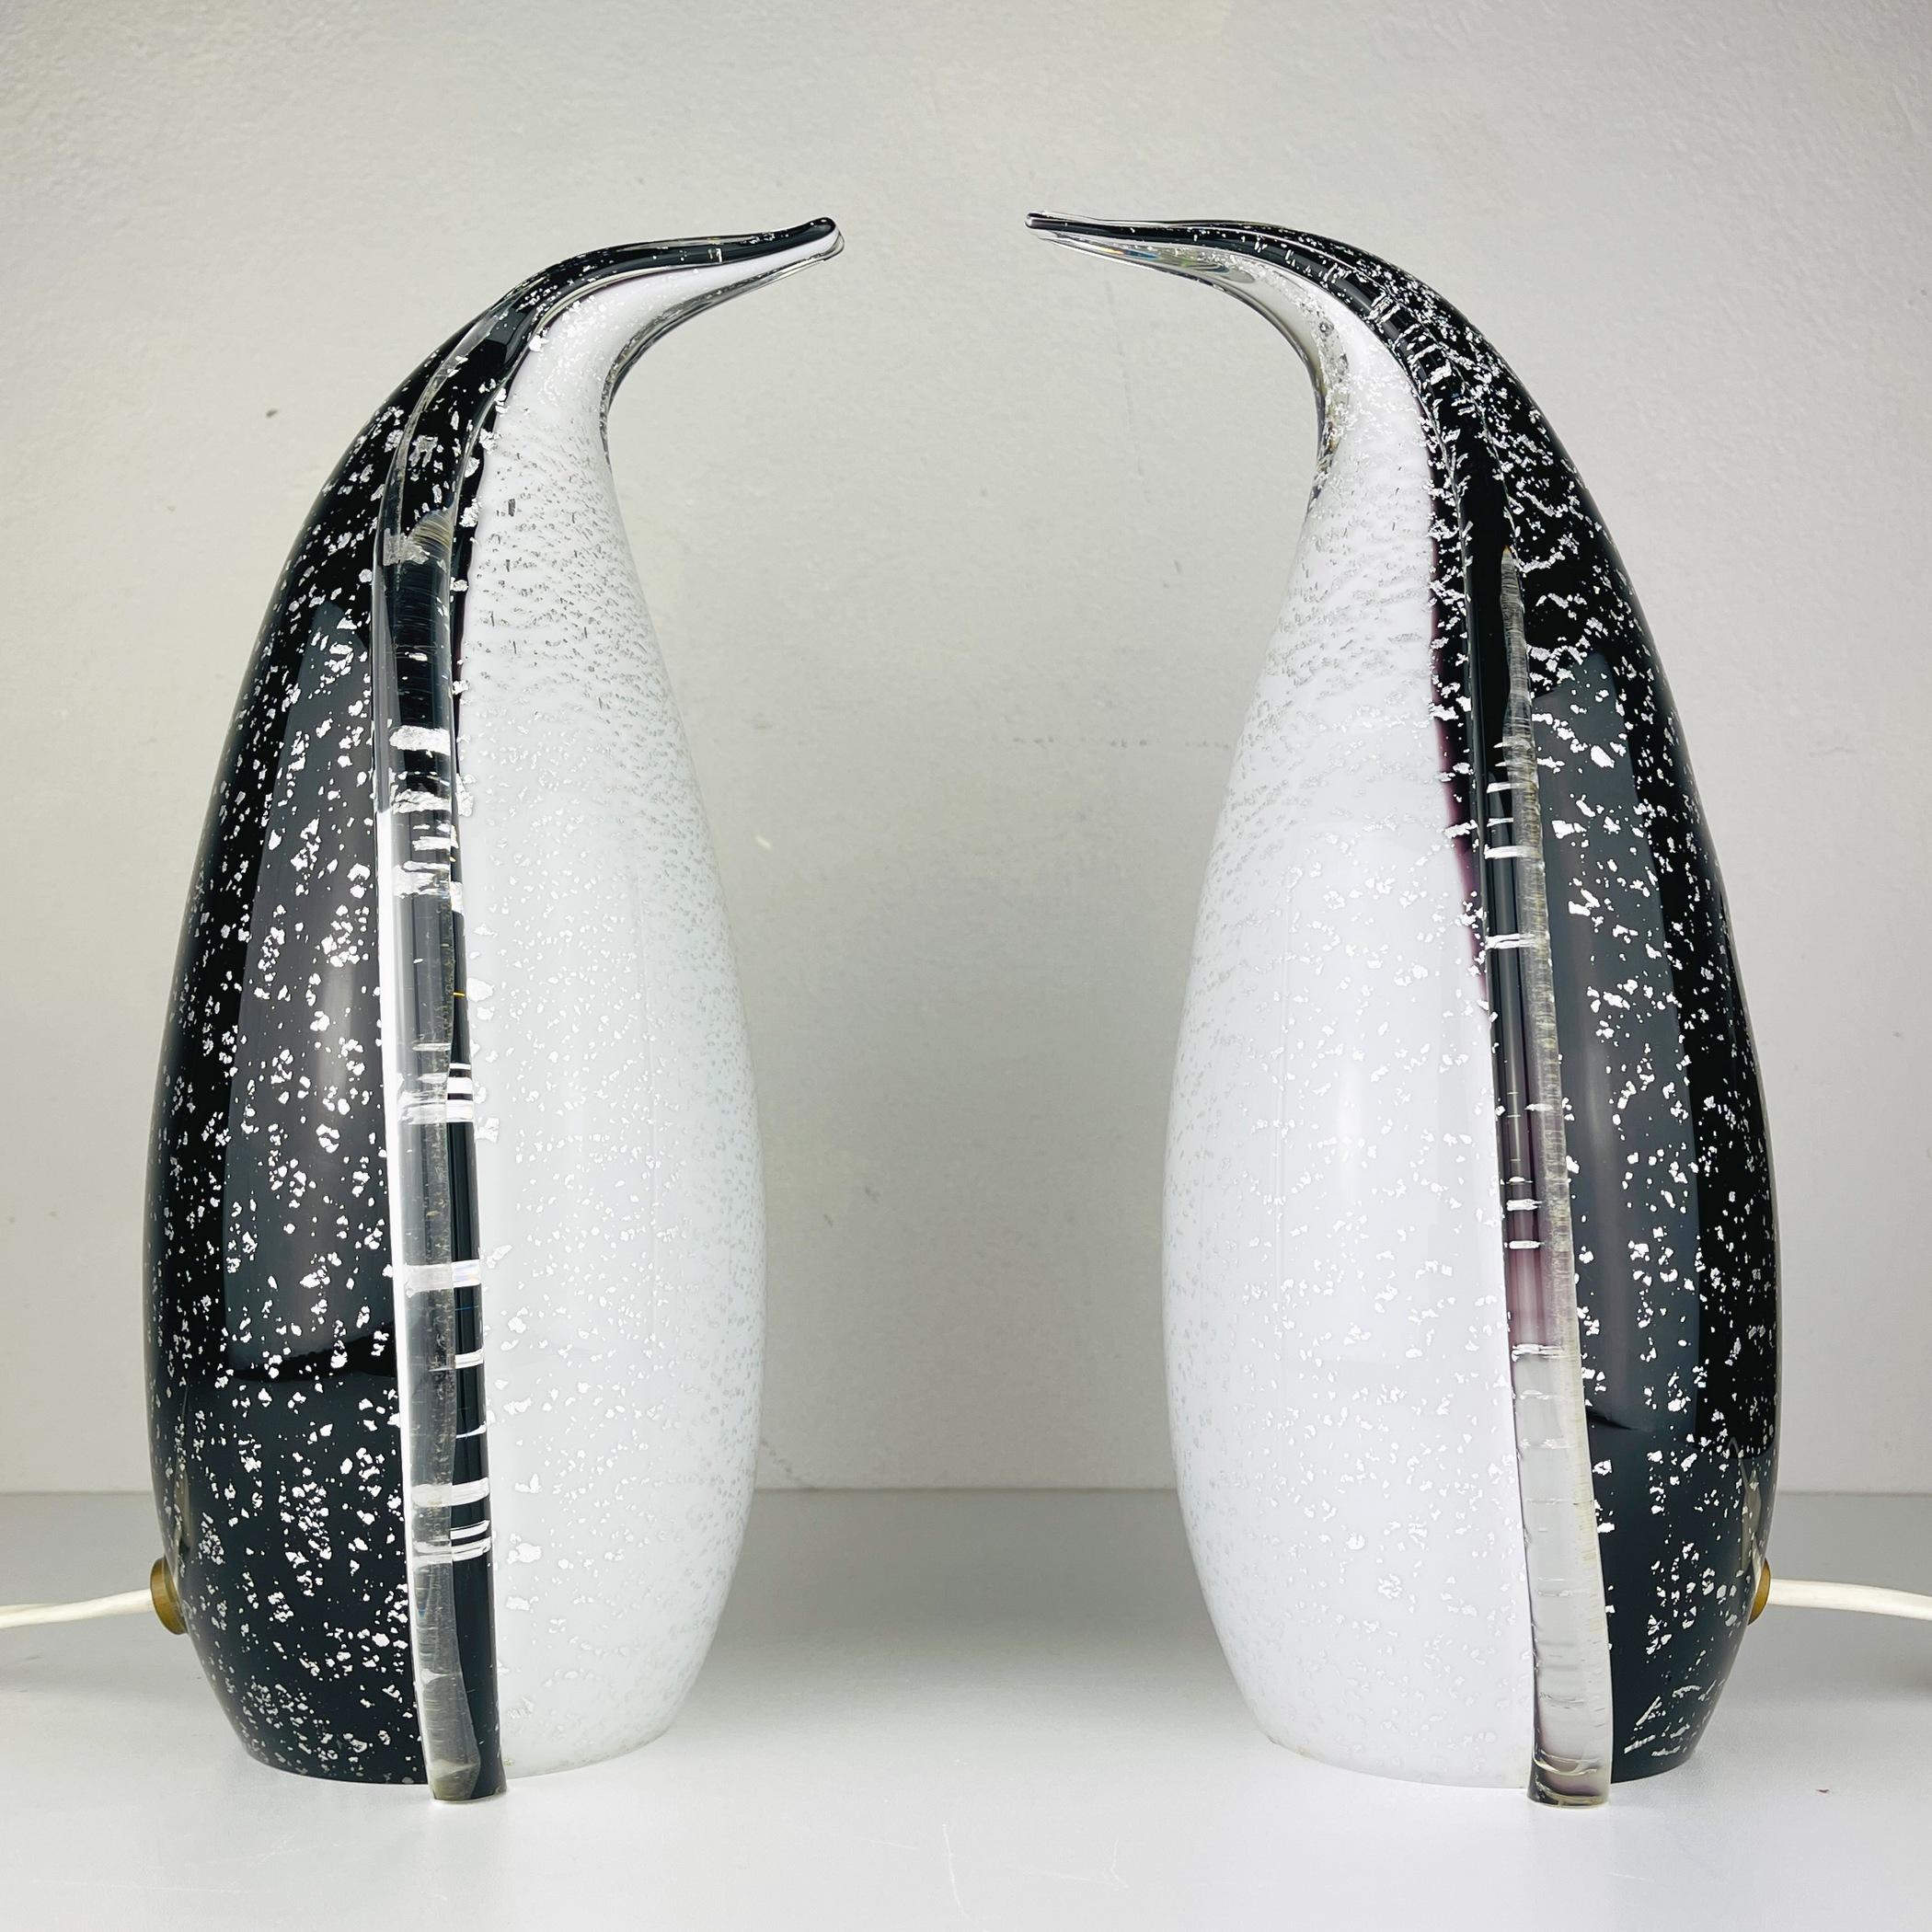 Paire rare et étonnante de lampes de table Murano Penguin fabriquées en Italie dans les années 1980. La technique de fabrication de la lampe est appelée Aventurina. Il s'agit d'une technique dans laquelle des paillettes de métal sont incrustées dans